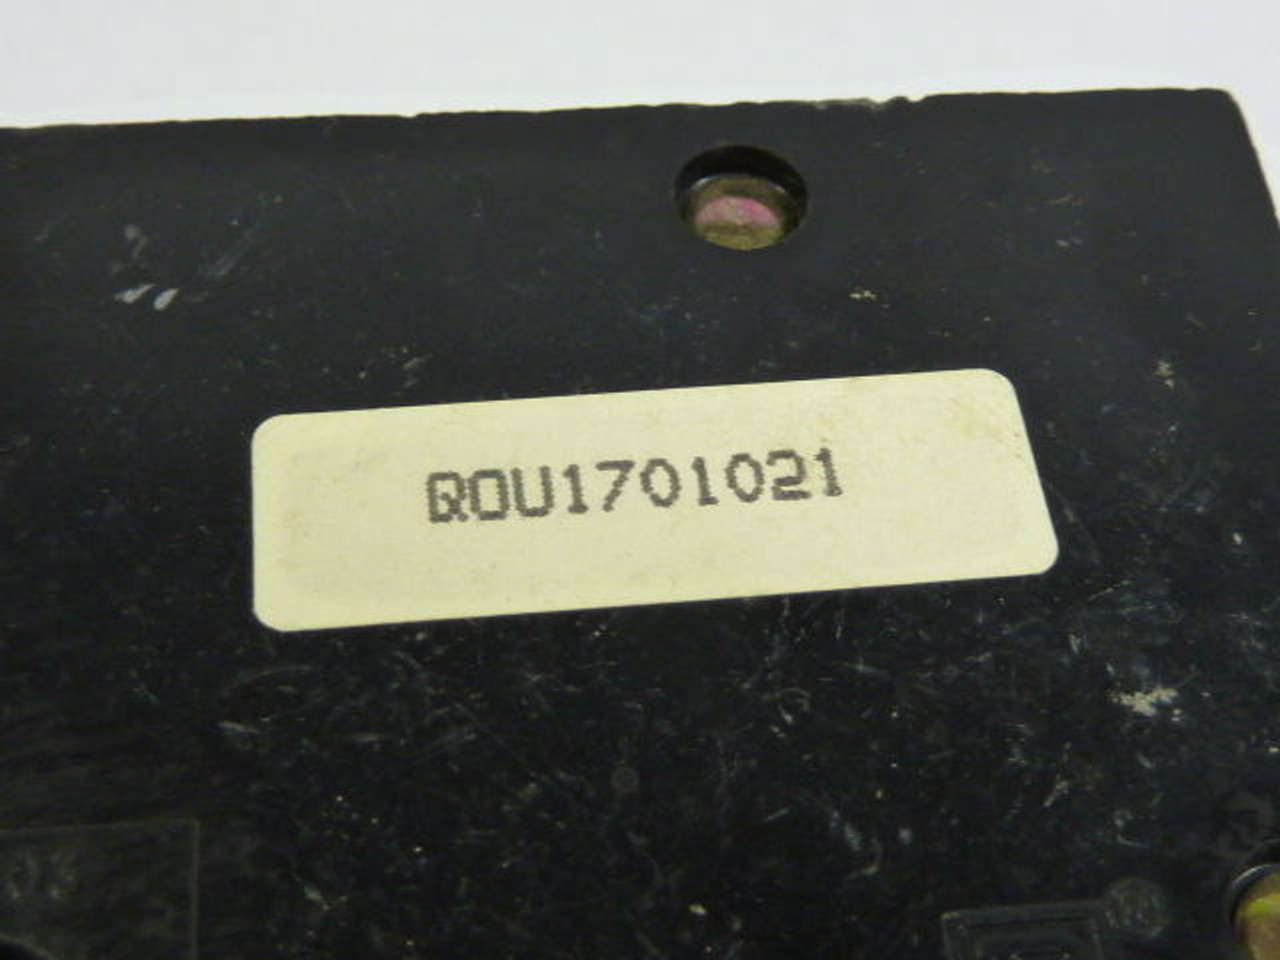 Square D QOU1701021 Mini Circuit Breaker 120/240V 70A USED